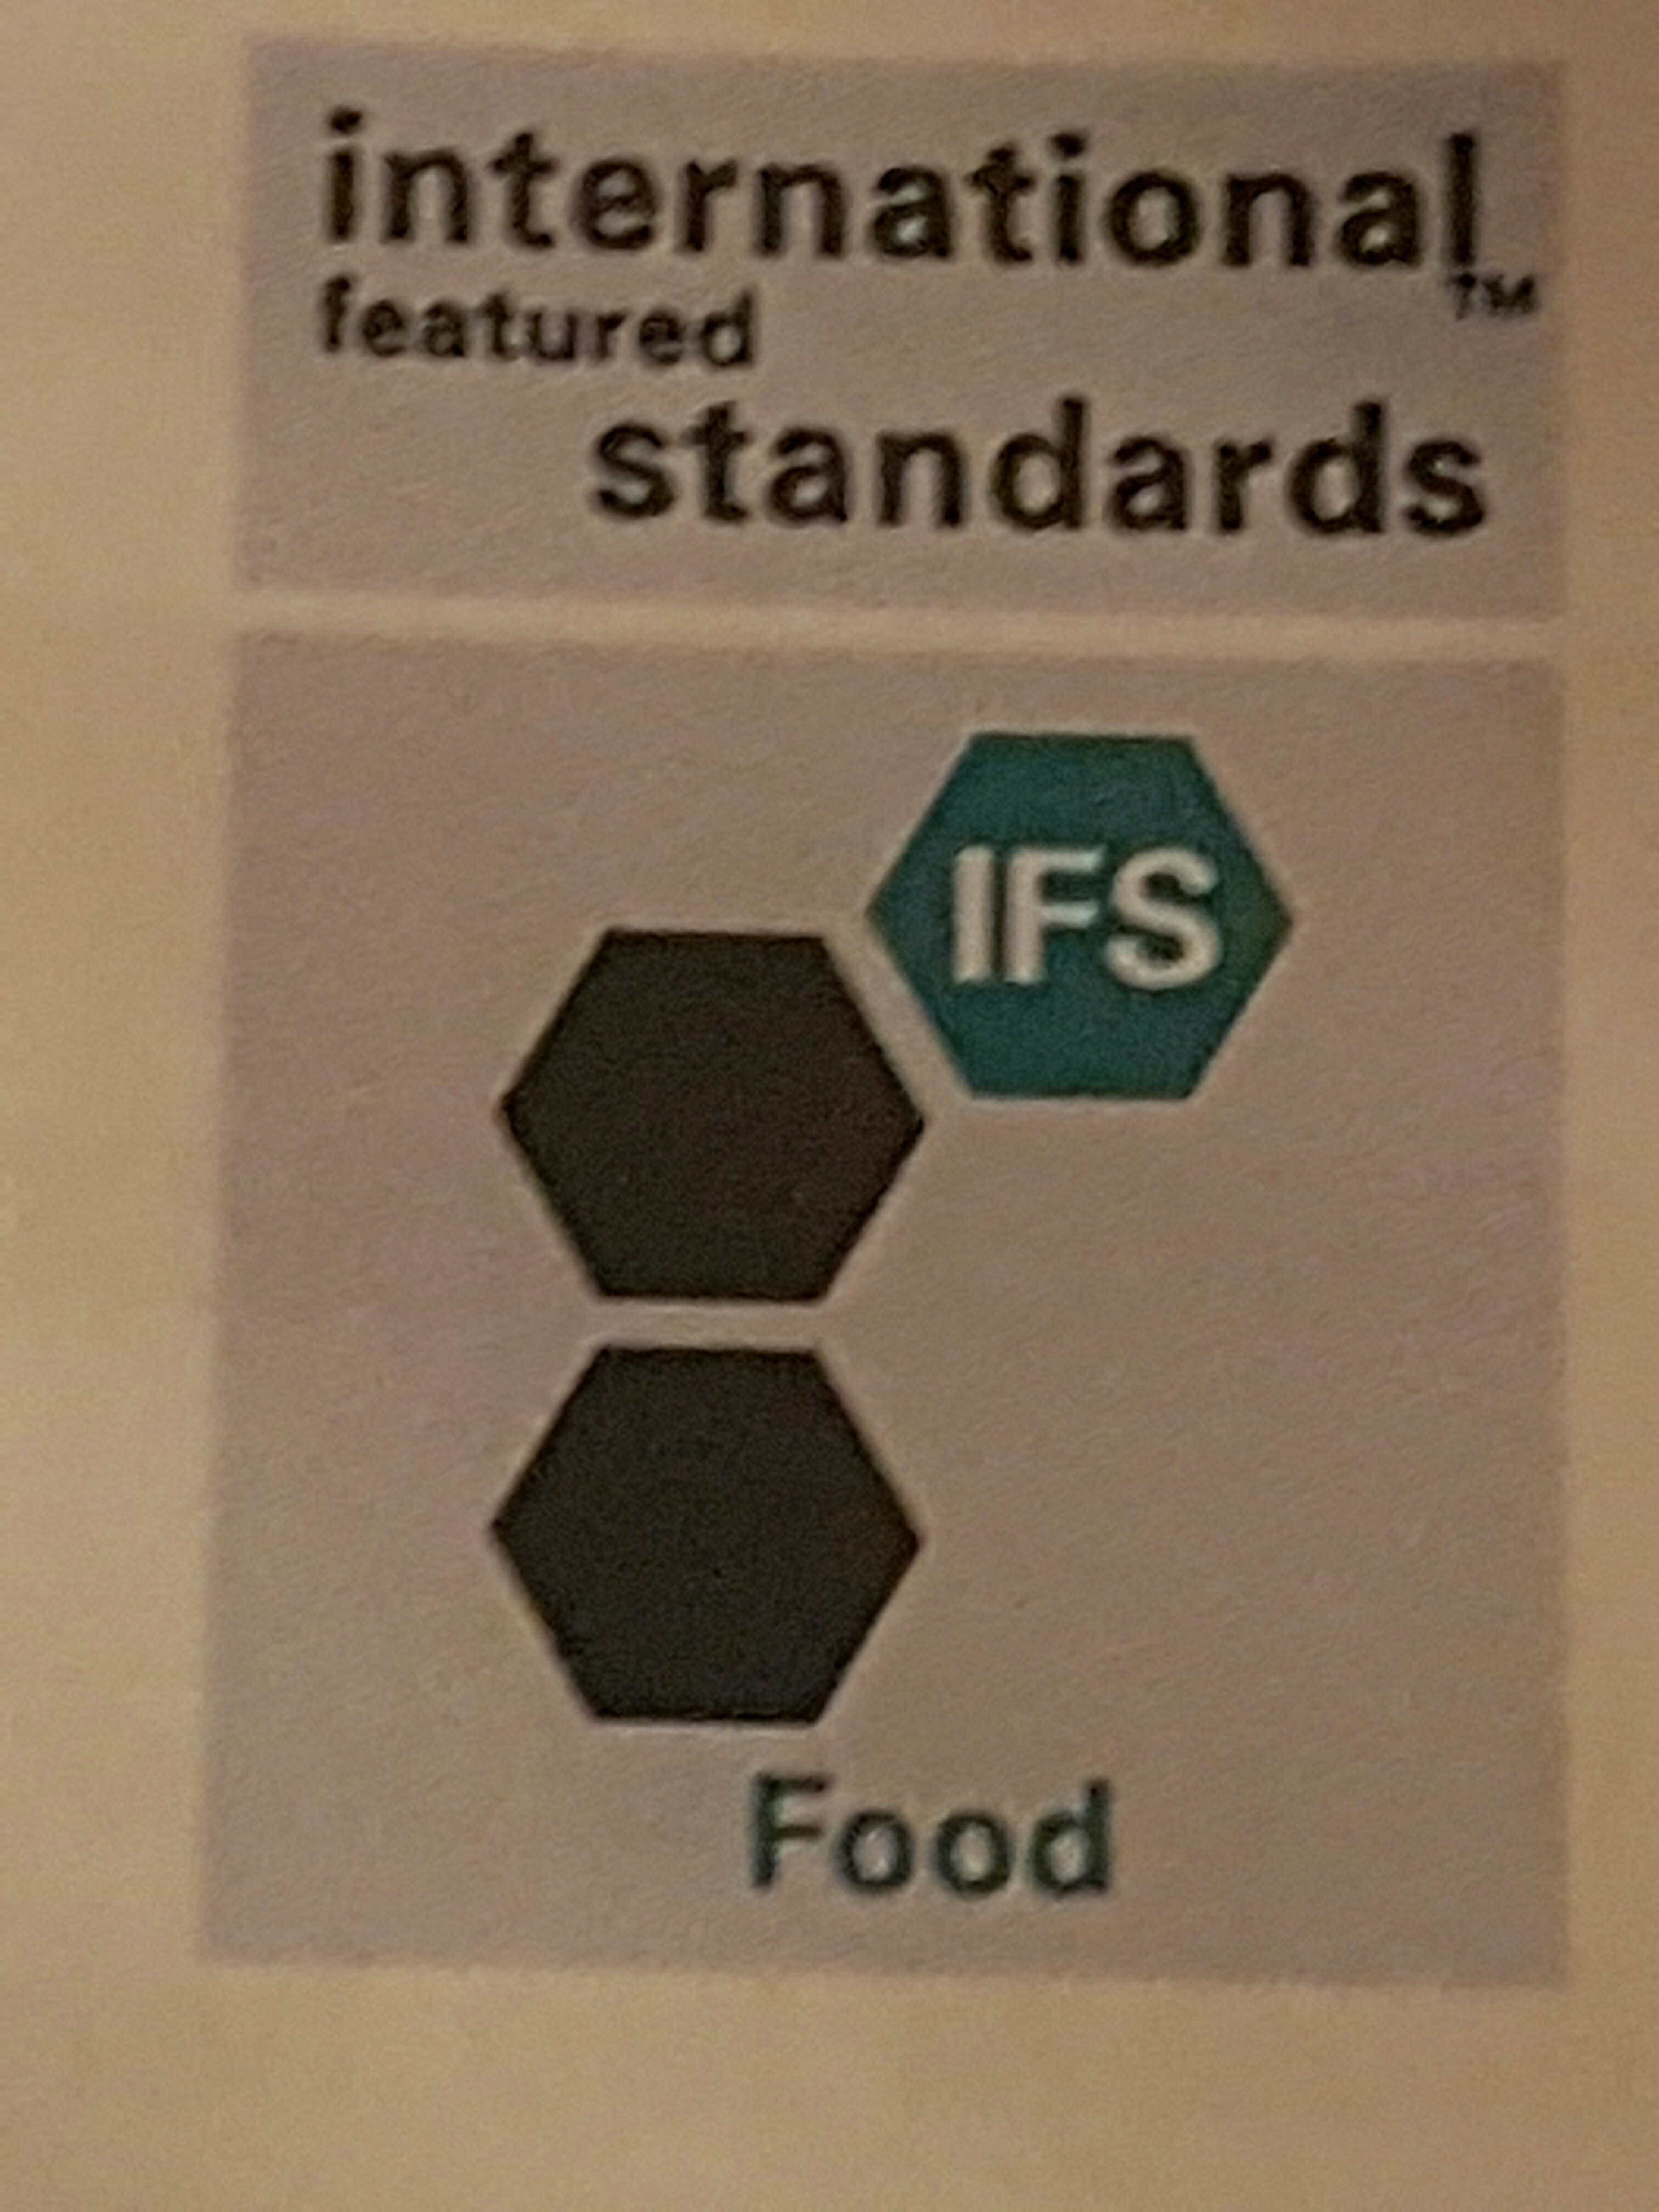 Supplier Audit IFS Food v6